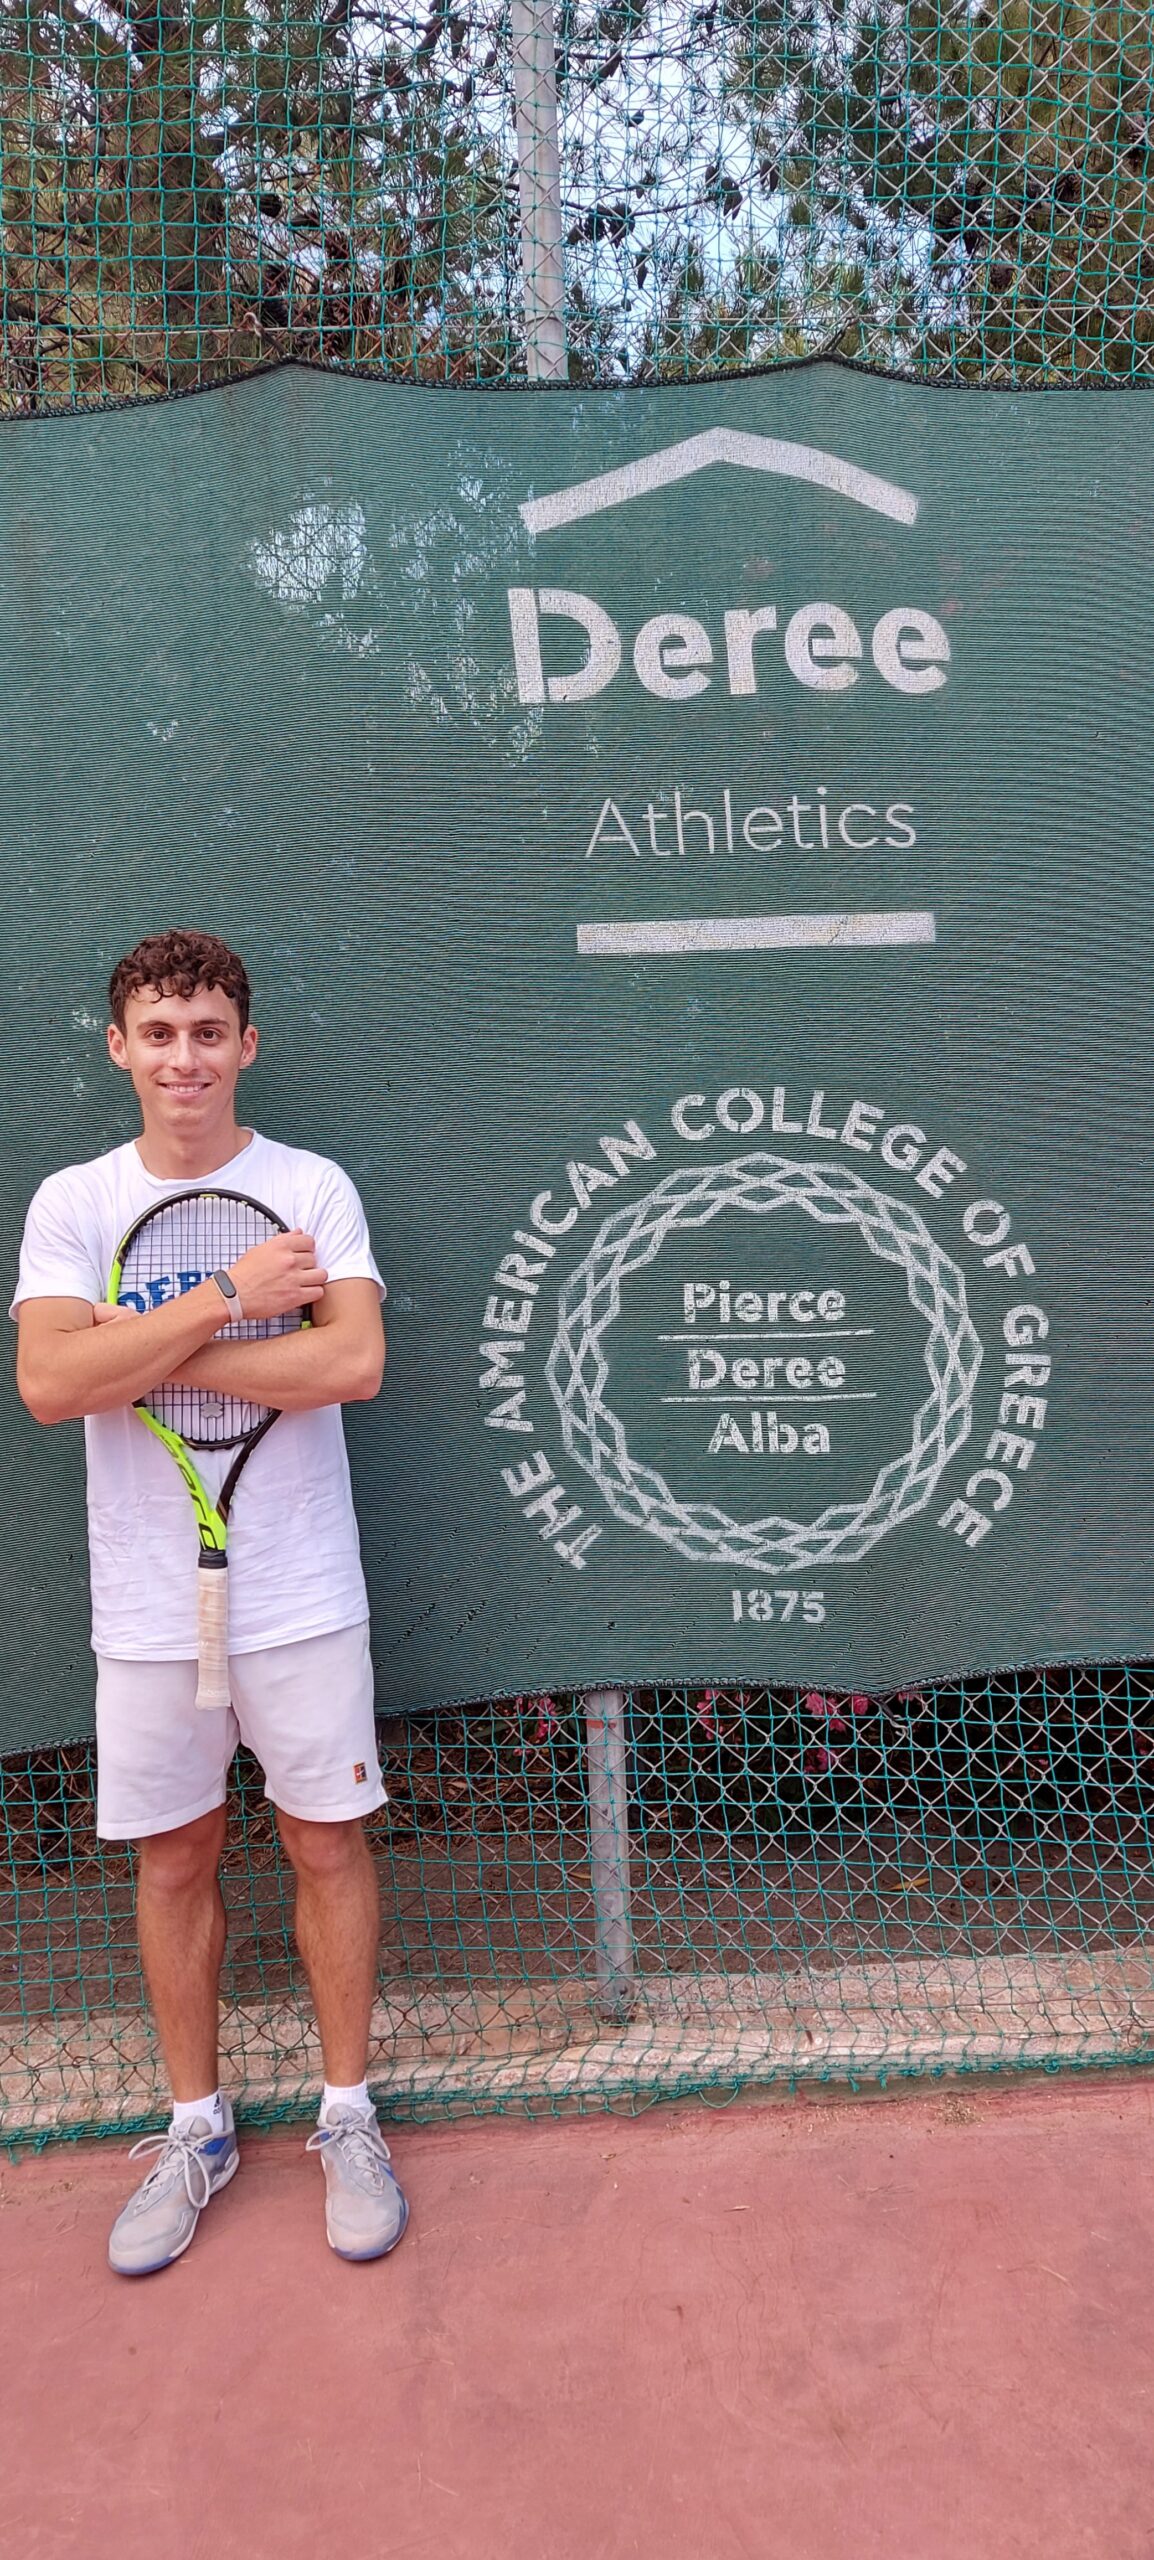 Ο Θανάσης Κωστίκας έγινε δεκτός στο Bard College με ακαδημαϊκή υποτροφία και θα είναι μέλος της ομάδας τένις!